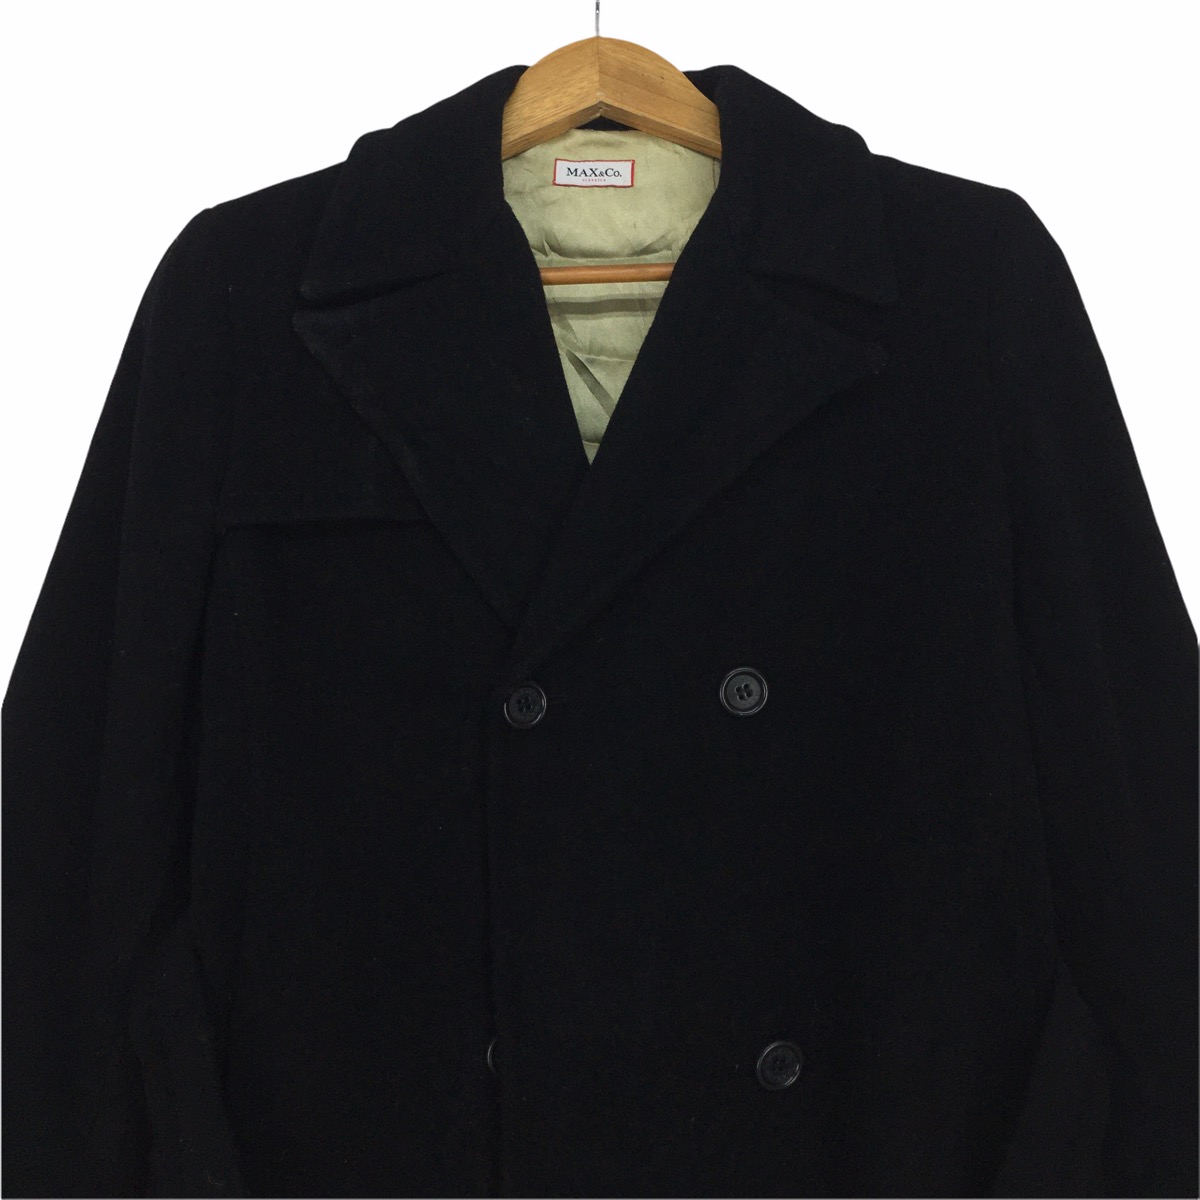 MAX MARA & Co. Double Breasted Parka Long Coat Jacket - 2